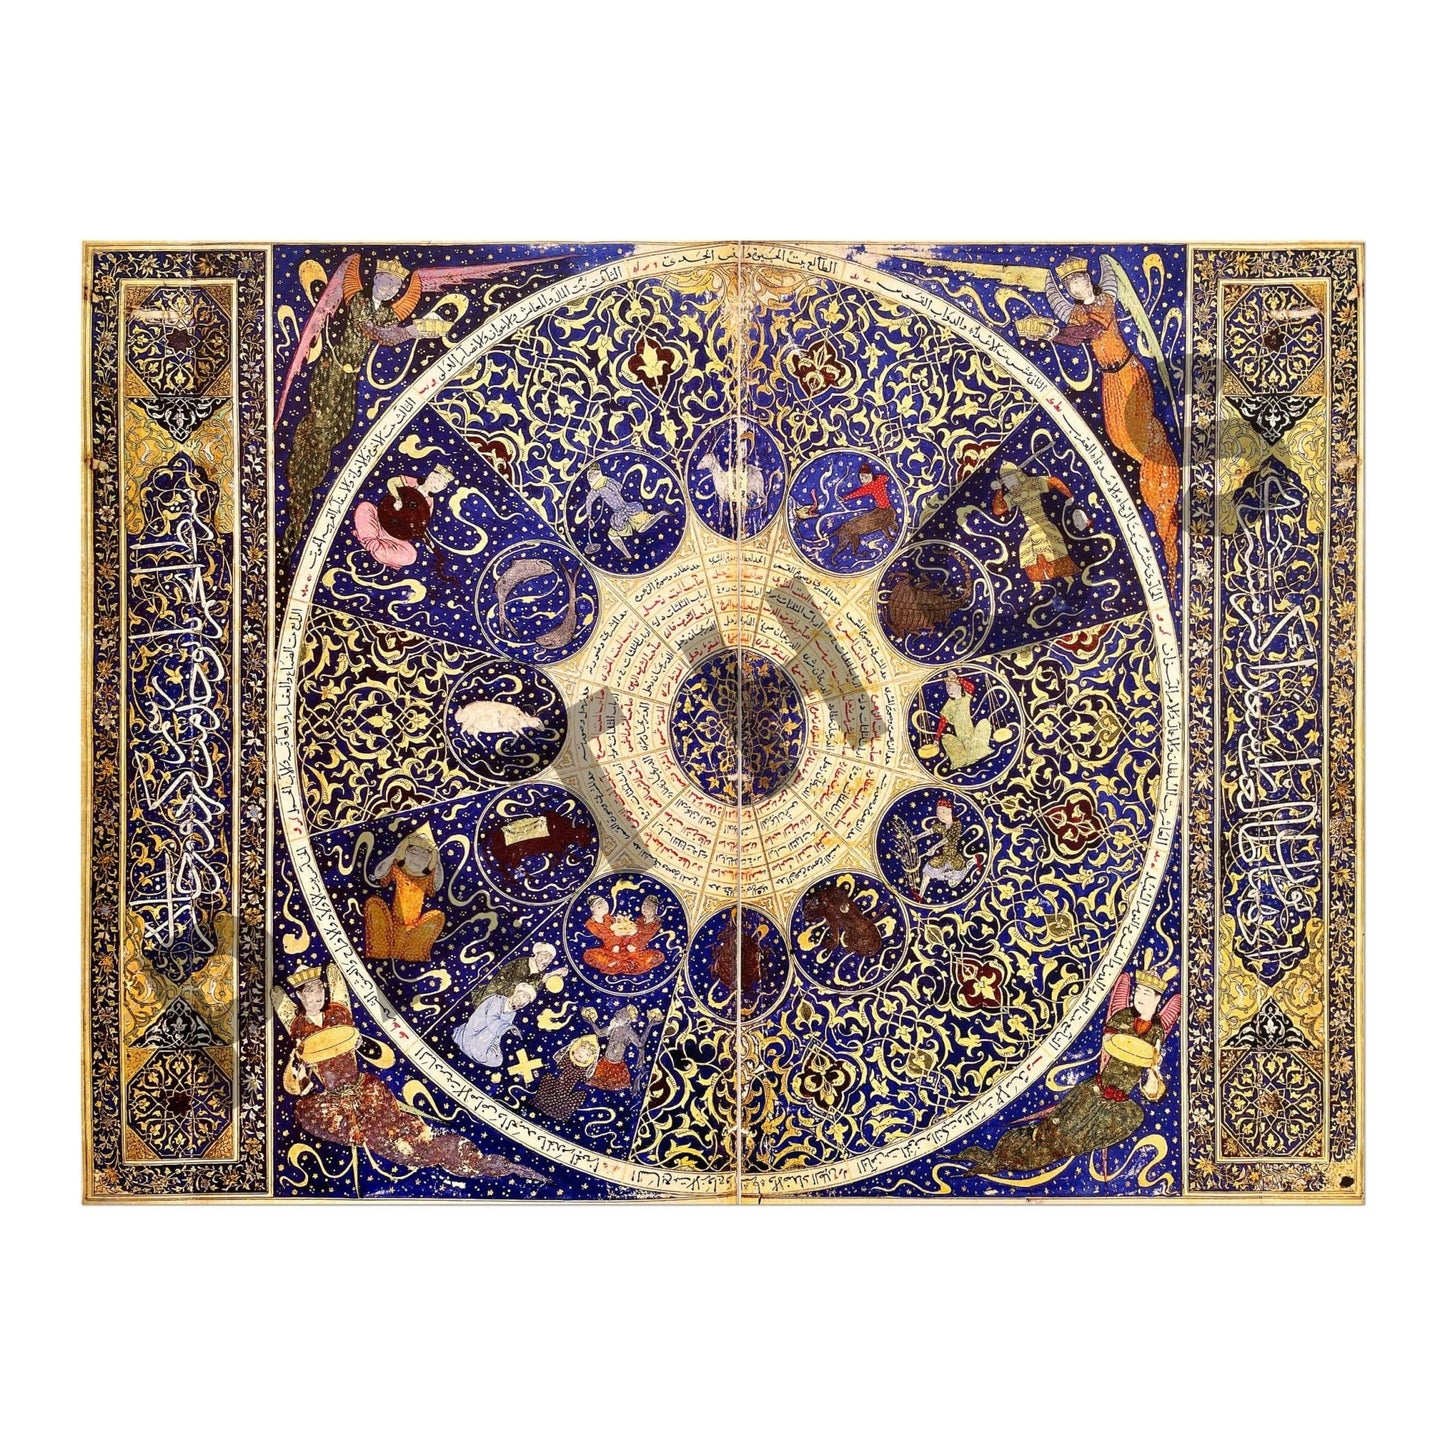 Zodiac Chart of Prince Eskandar-Soltan (Persian Horoscope Art)